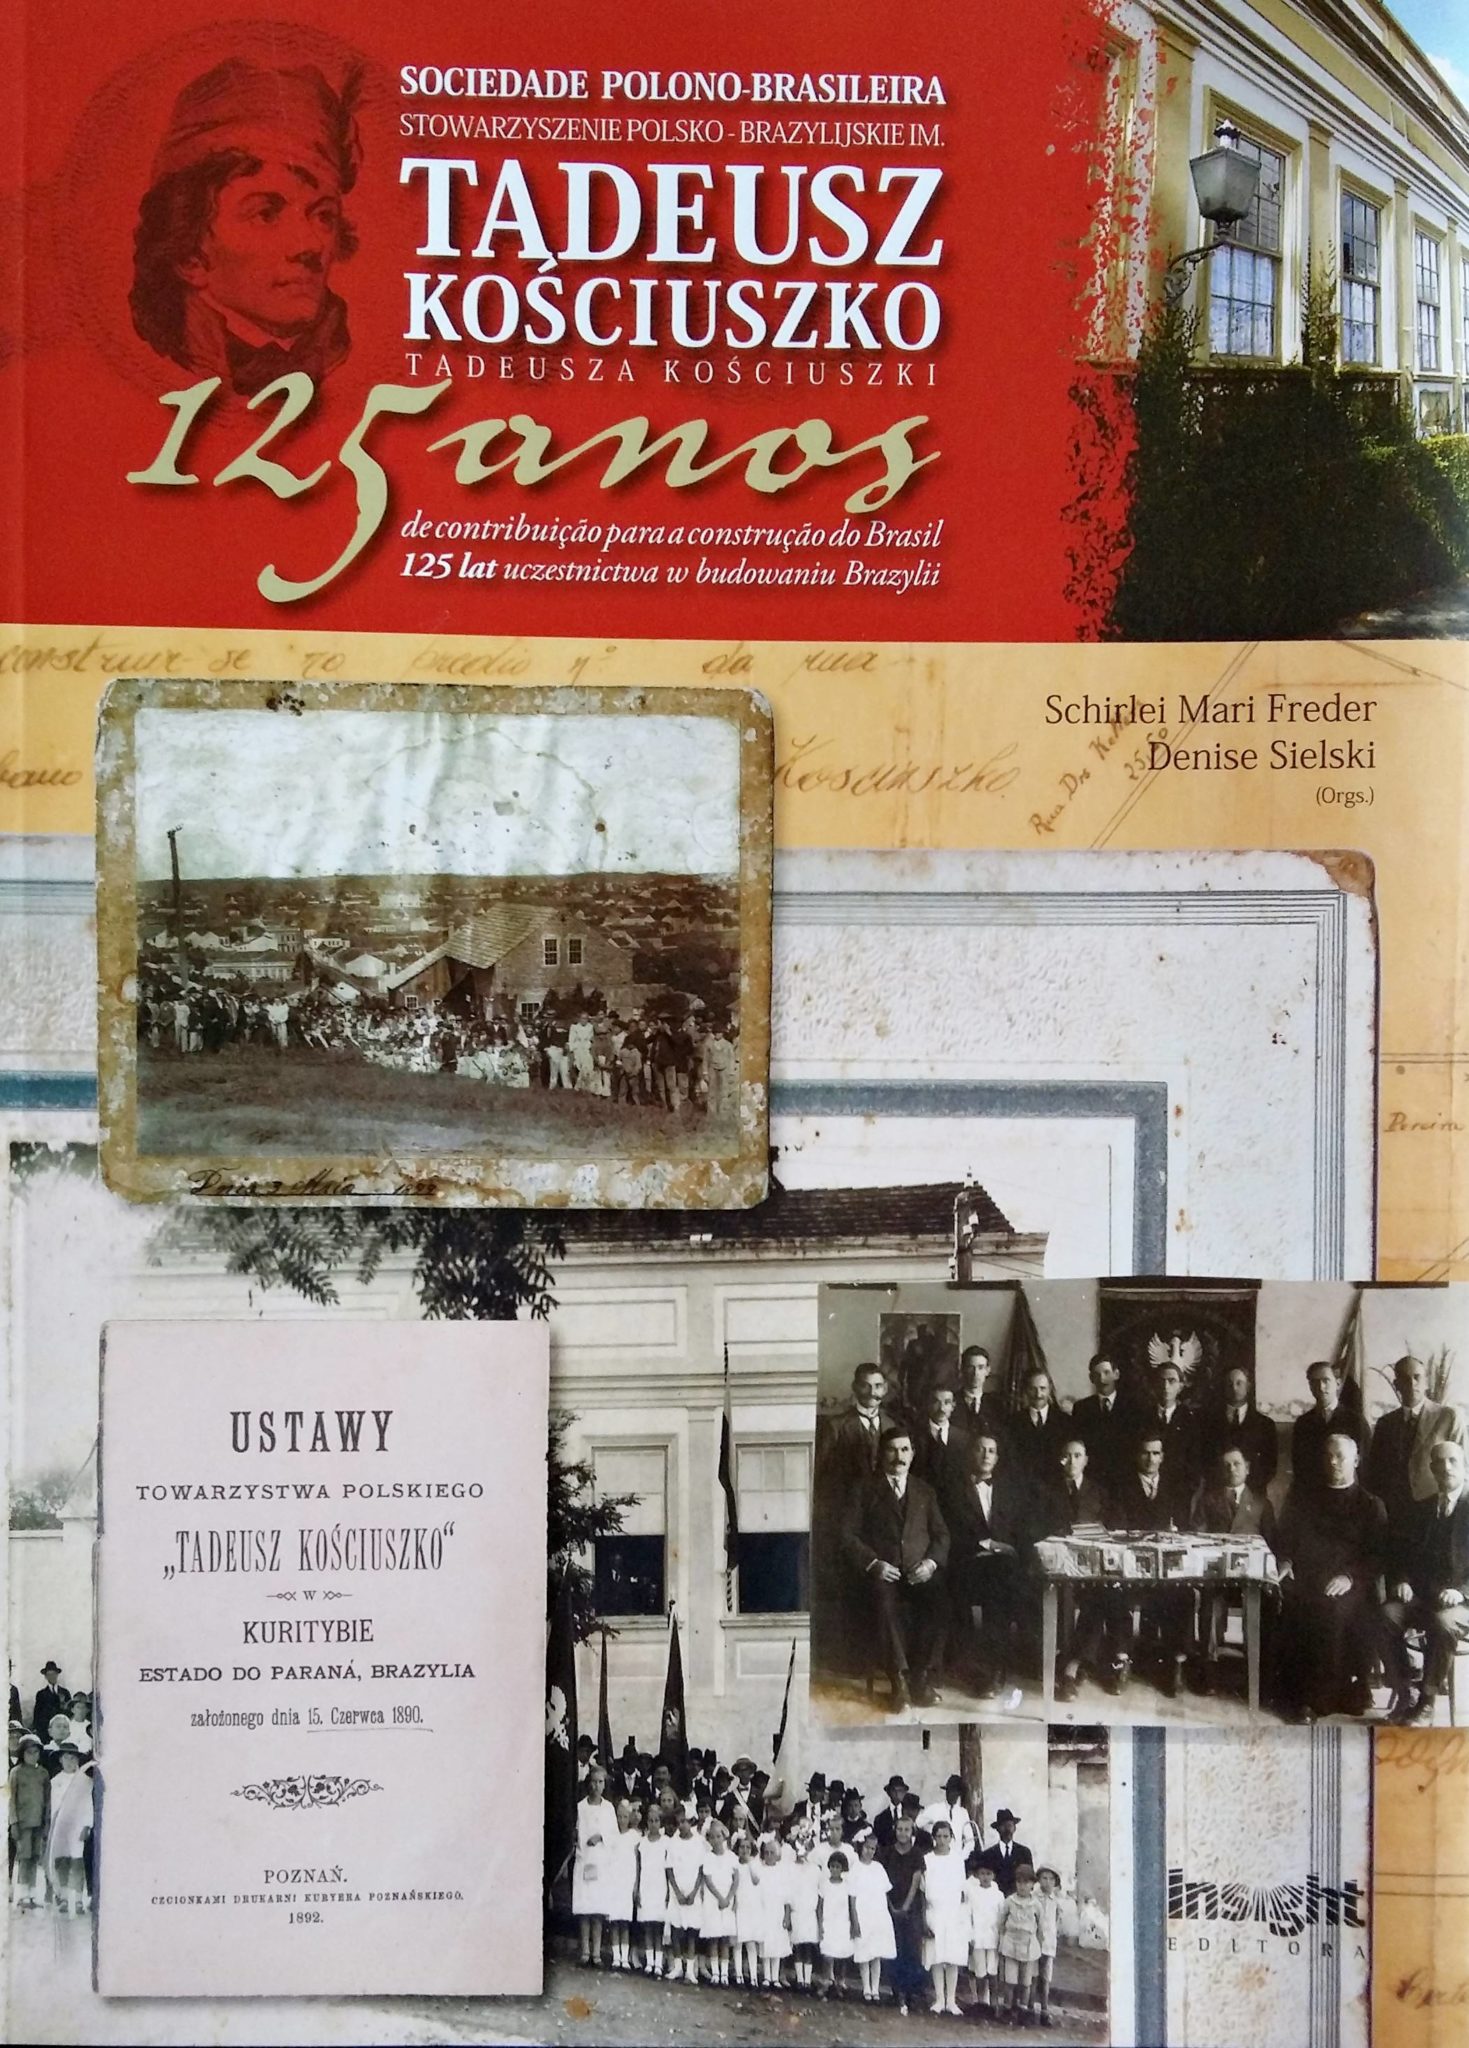 Sociedade Polono-Brasileira Tadeusz Kosciuszko: 125 anos de contribuição para a construção do Brasil